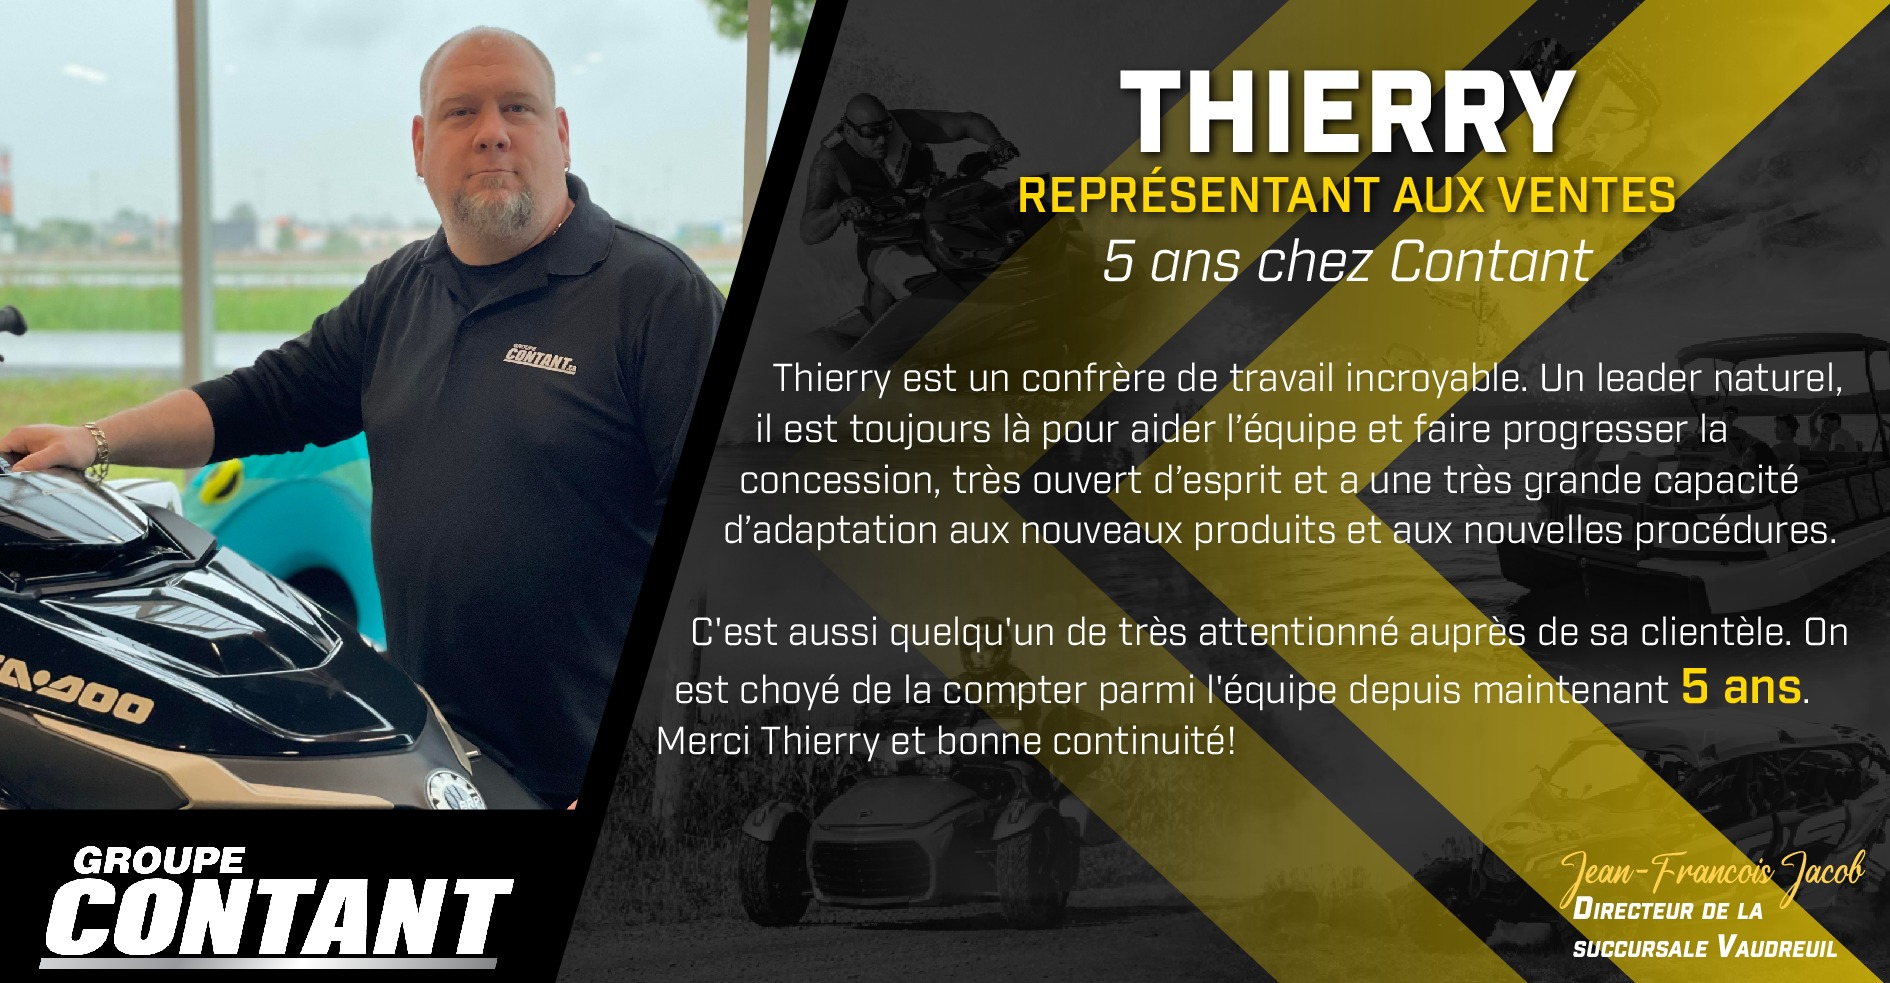 5 ans chez Contant pour Thierry!